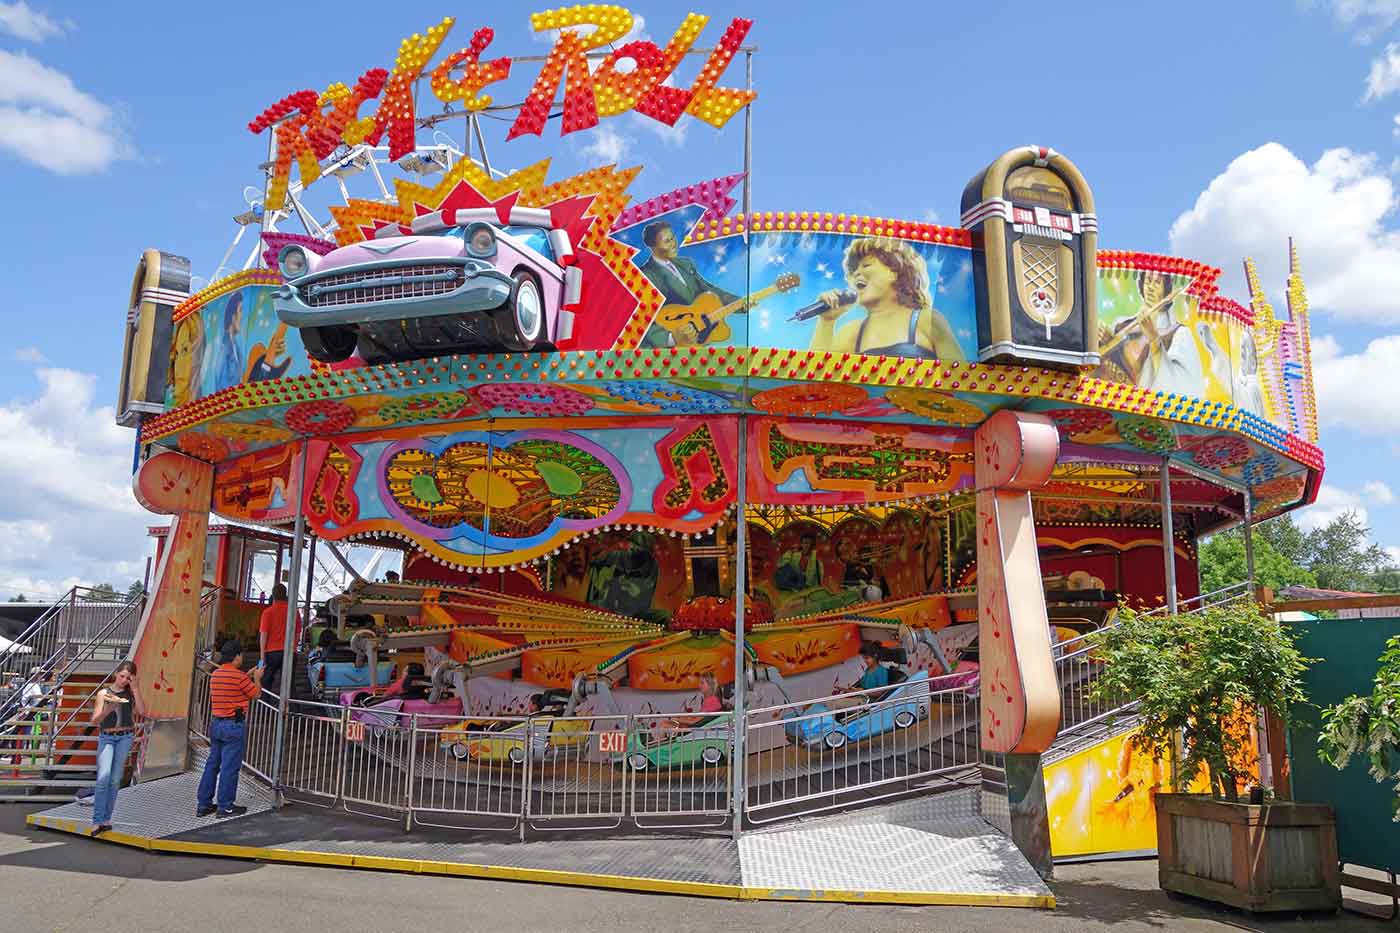 Oaks Park Amusement Center